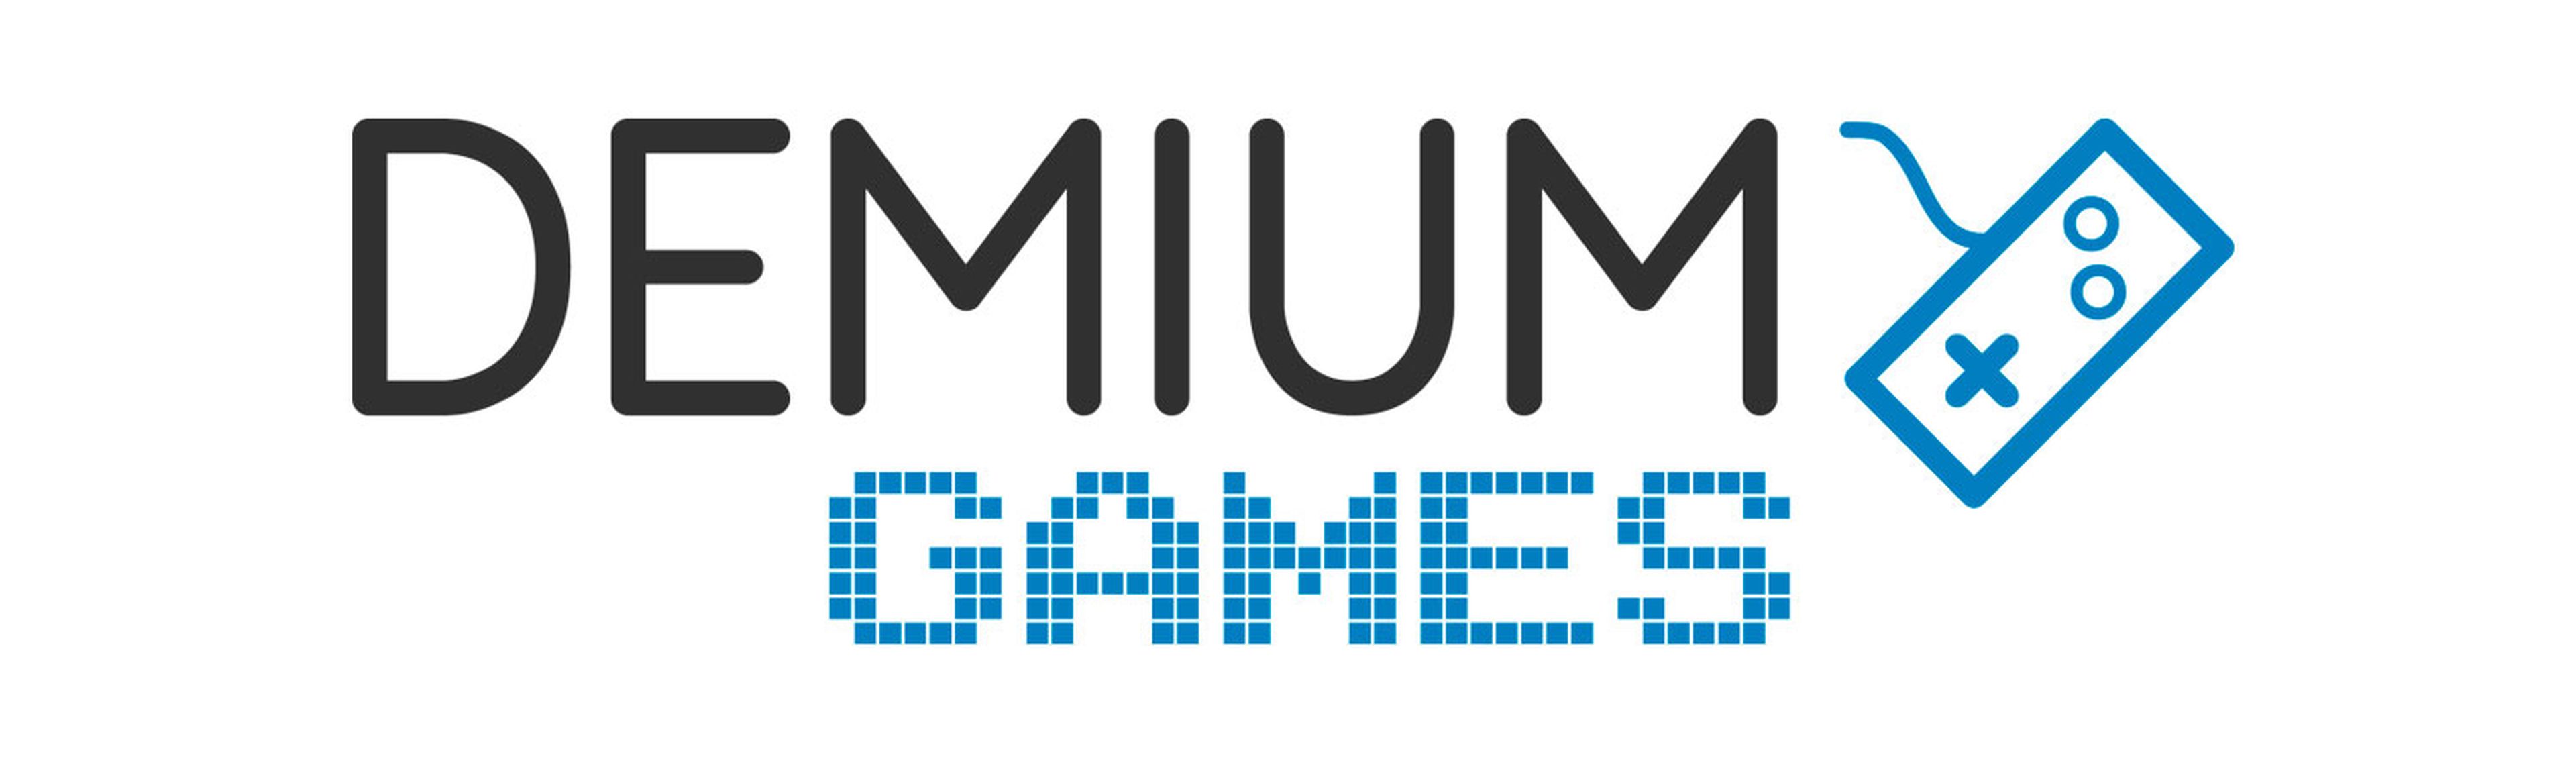 Demium Games - logo